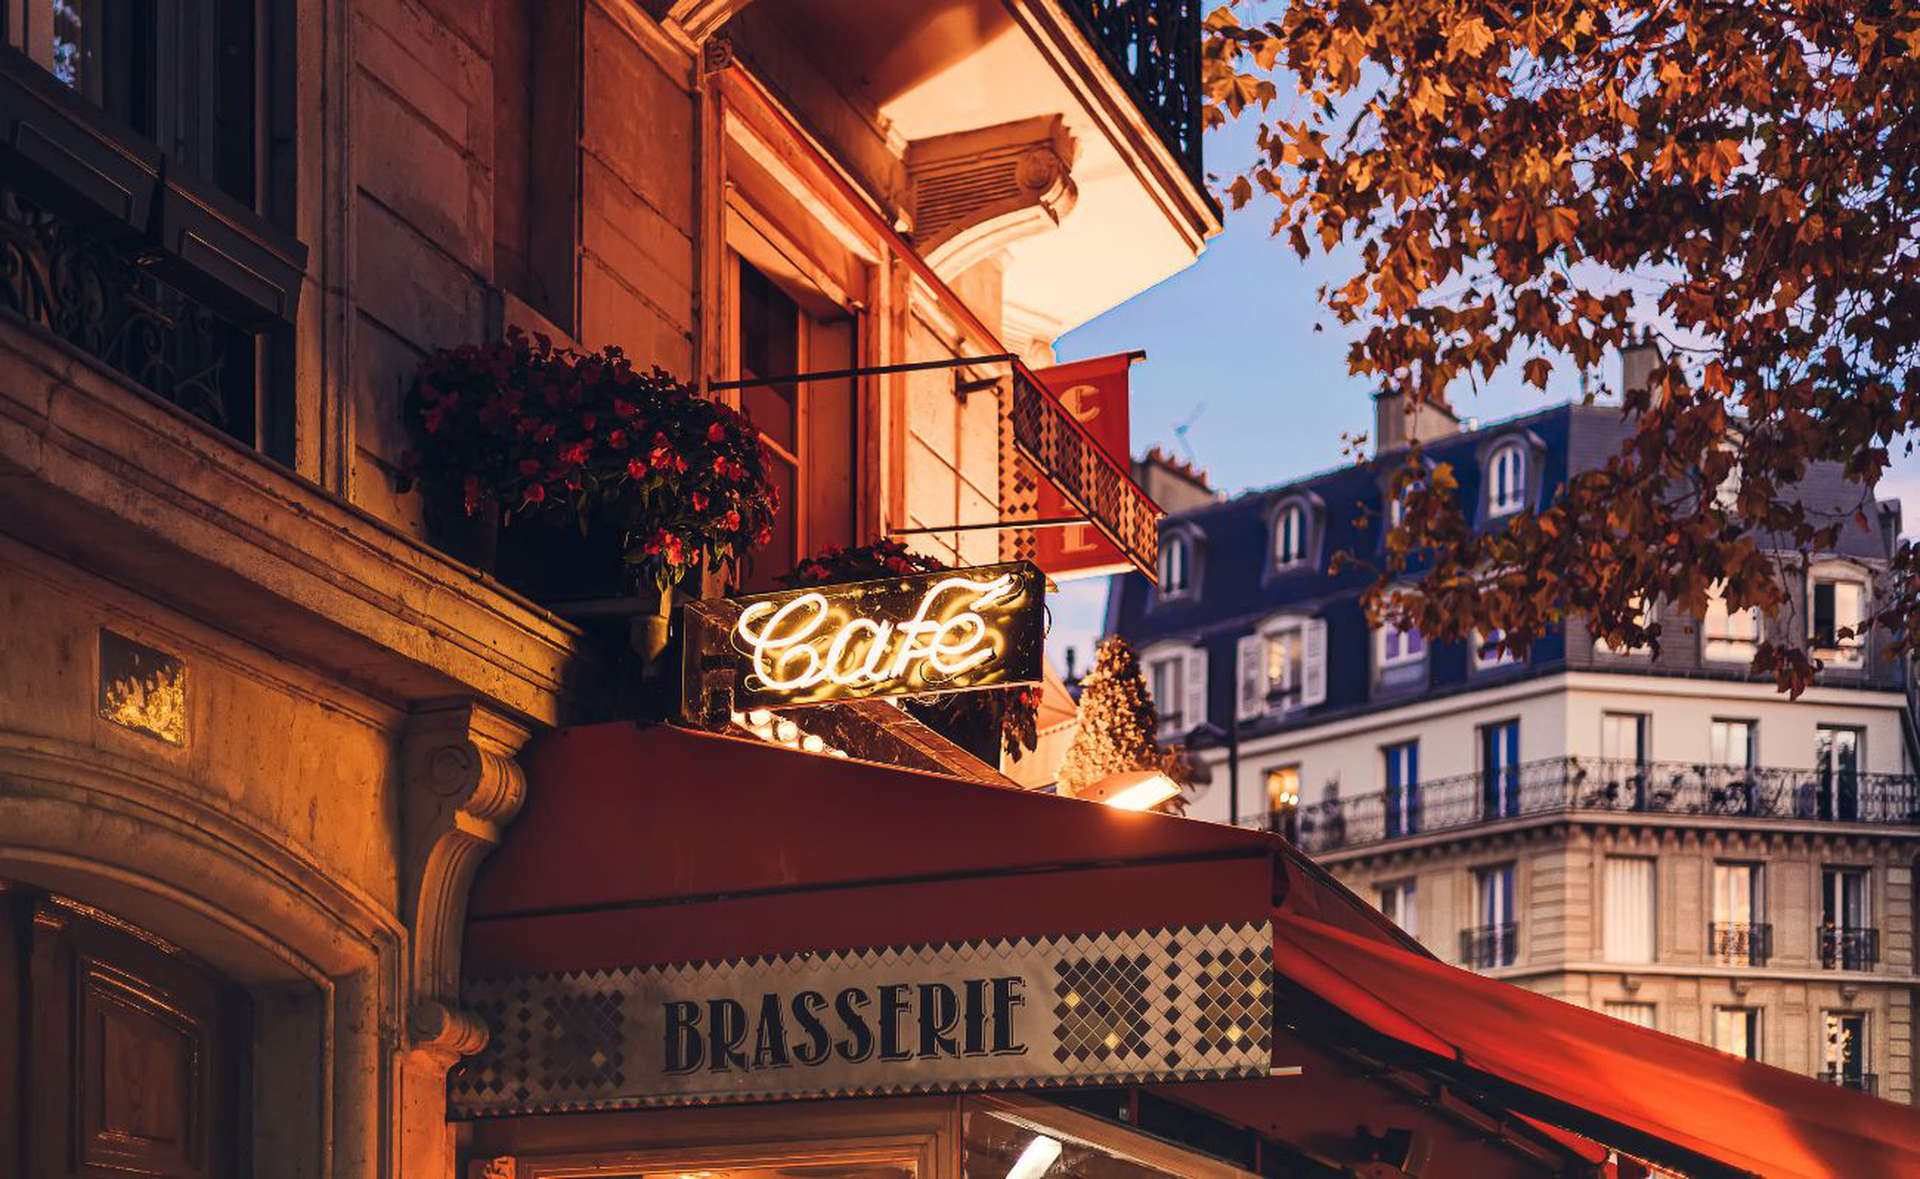 Una brasserie francesa en París 